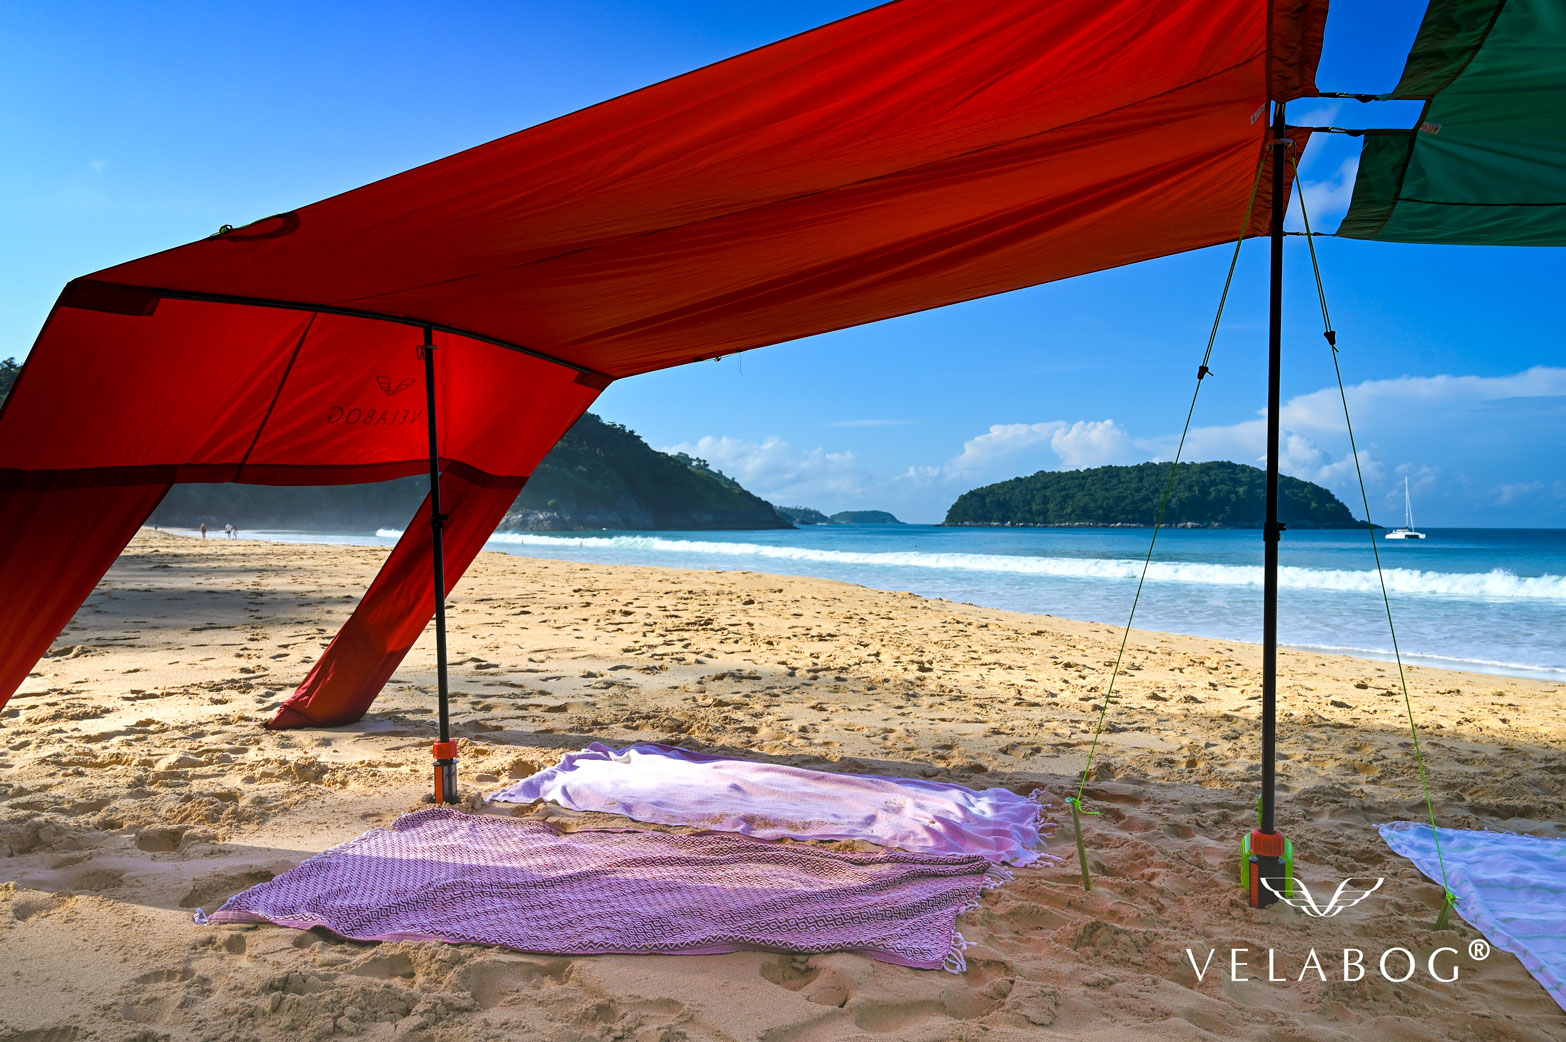 Combinaison de deux voiles d’ombrage tentes plage Velabog Breeze. Protection anti-UV pour la plage offrant beaucoup d’ombre pour 6 personnes minimum. Le meilleur auvent de plage. Option de montage avec le kit d’extension quand il n’y a pas ou peu de vent. Zoom.